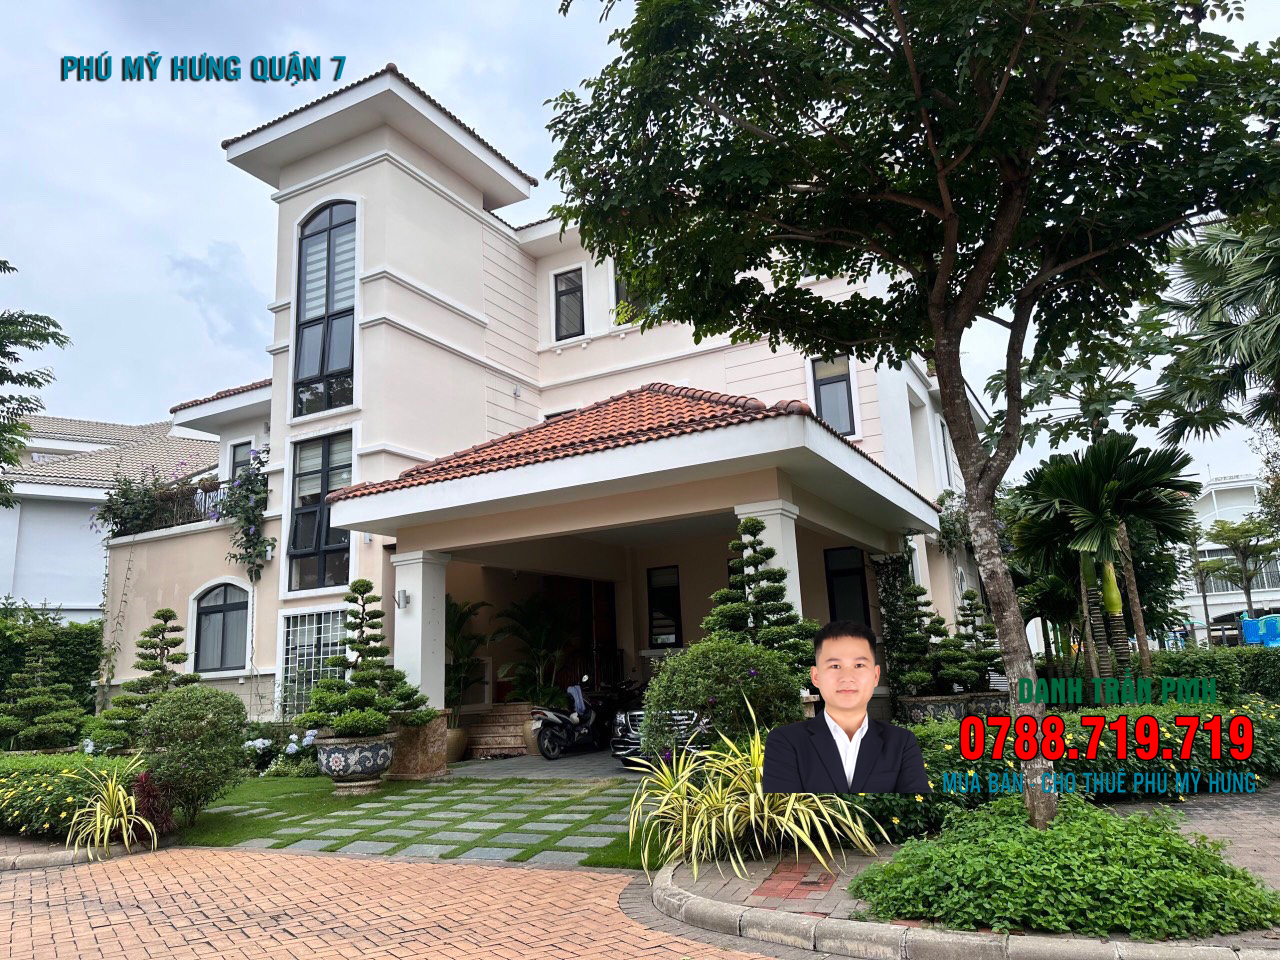 BÁN Biệt Thự compound CHATEAU Villa 667m2 giá 210 tỷ LH 0788719719 DANH TRẦN PMH 13597446